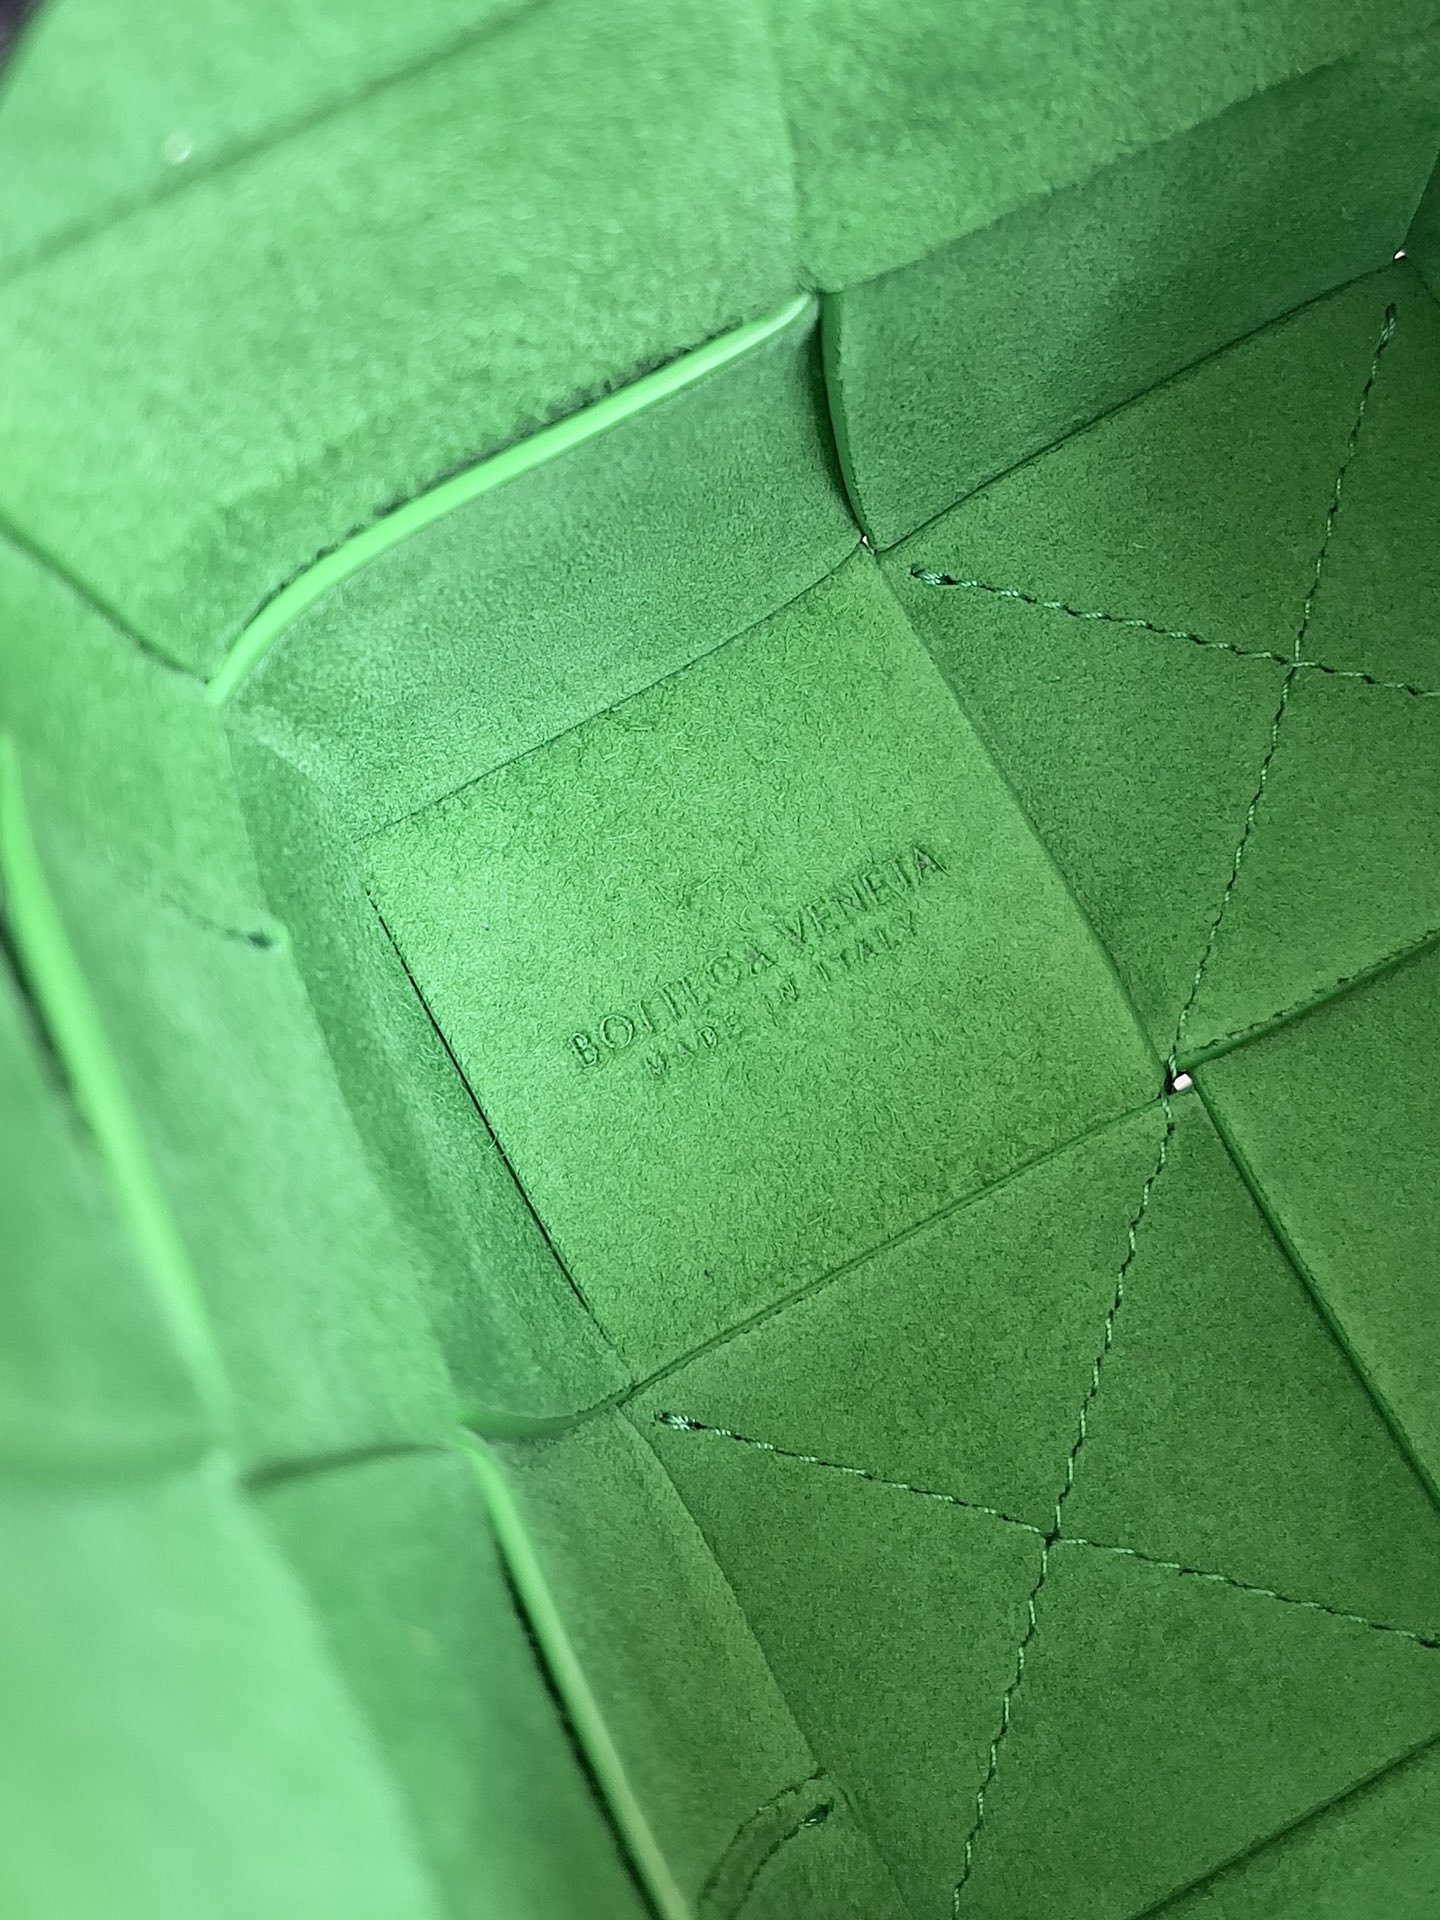 Bv 新款Cassette 水桶包 小号 水桶包大方格的设计 经典的编织元素 14cm 粒面黑 鹦鹉绿